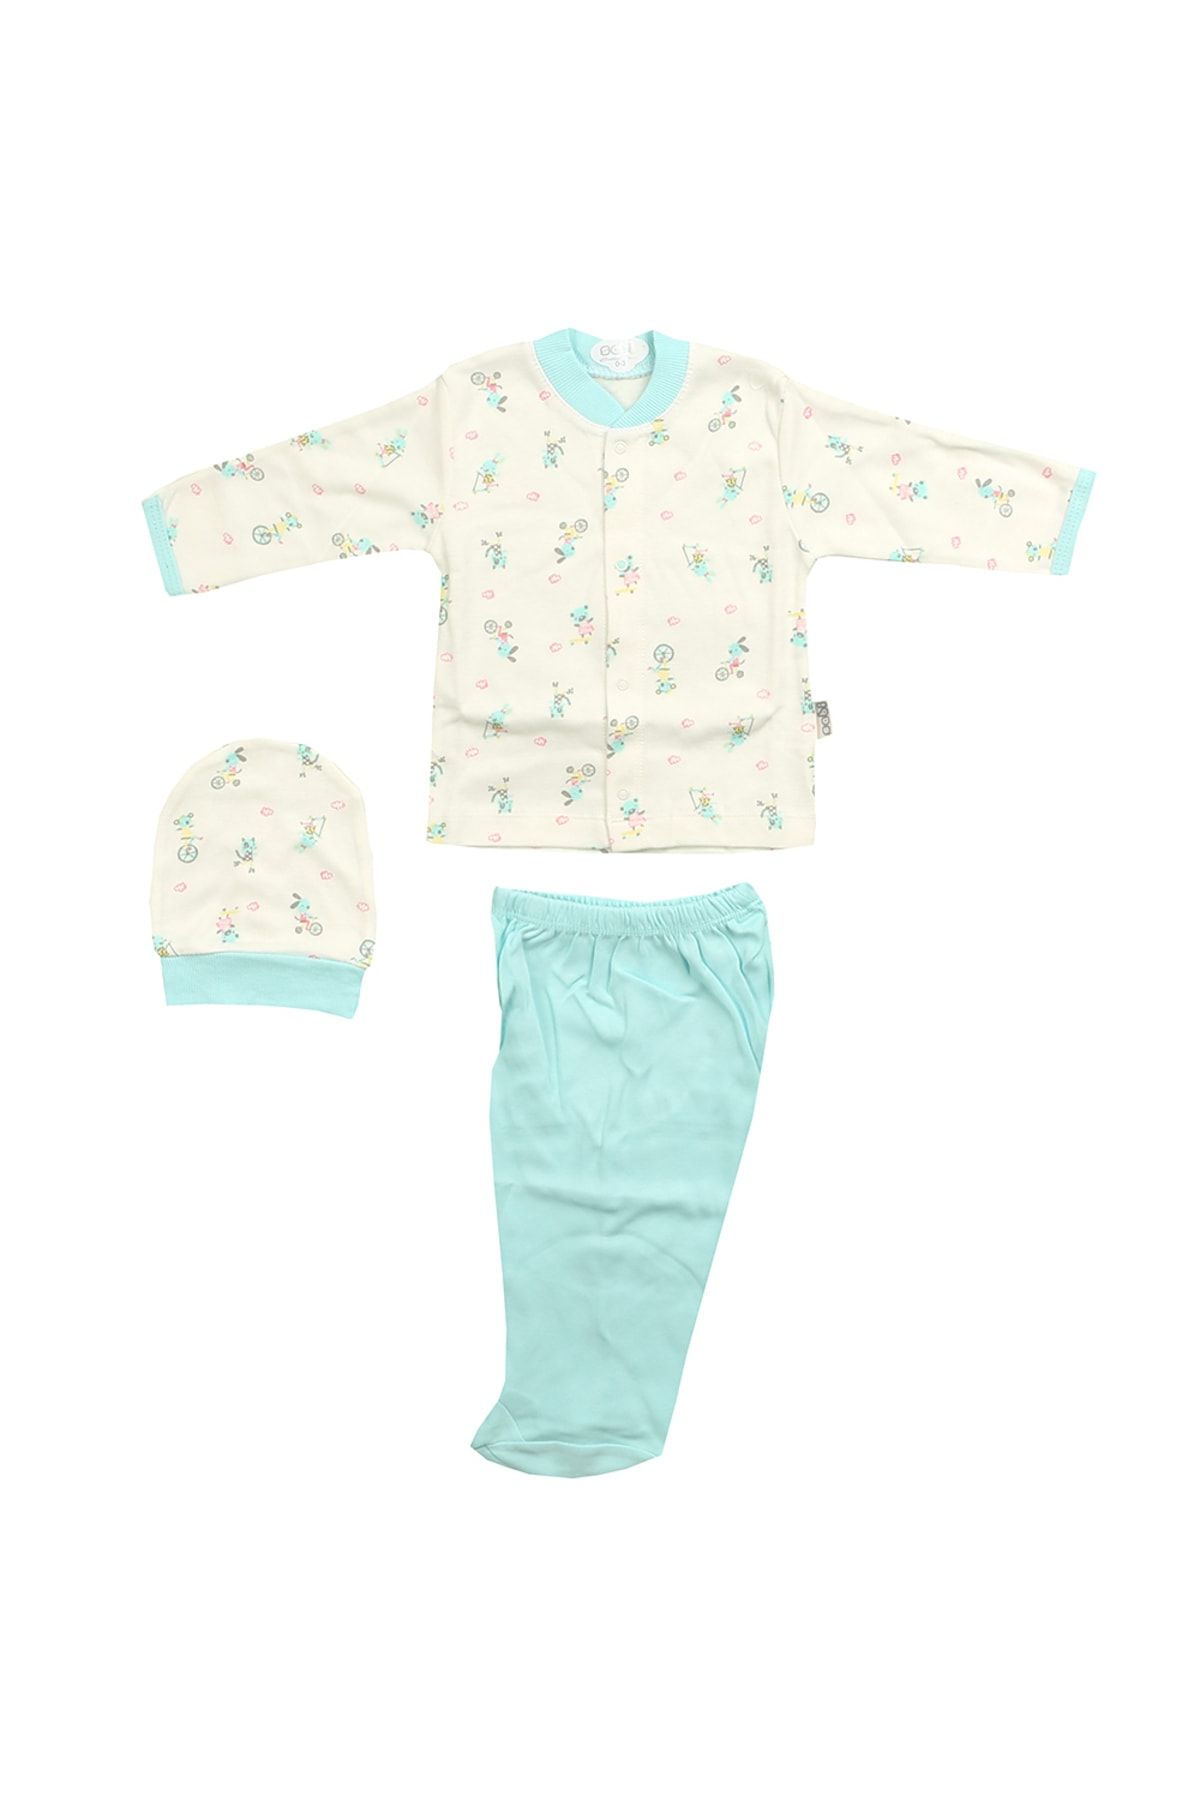 Sebi Bebe Bebek Pijama Takımı Biseklet Desenli